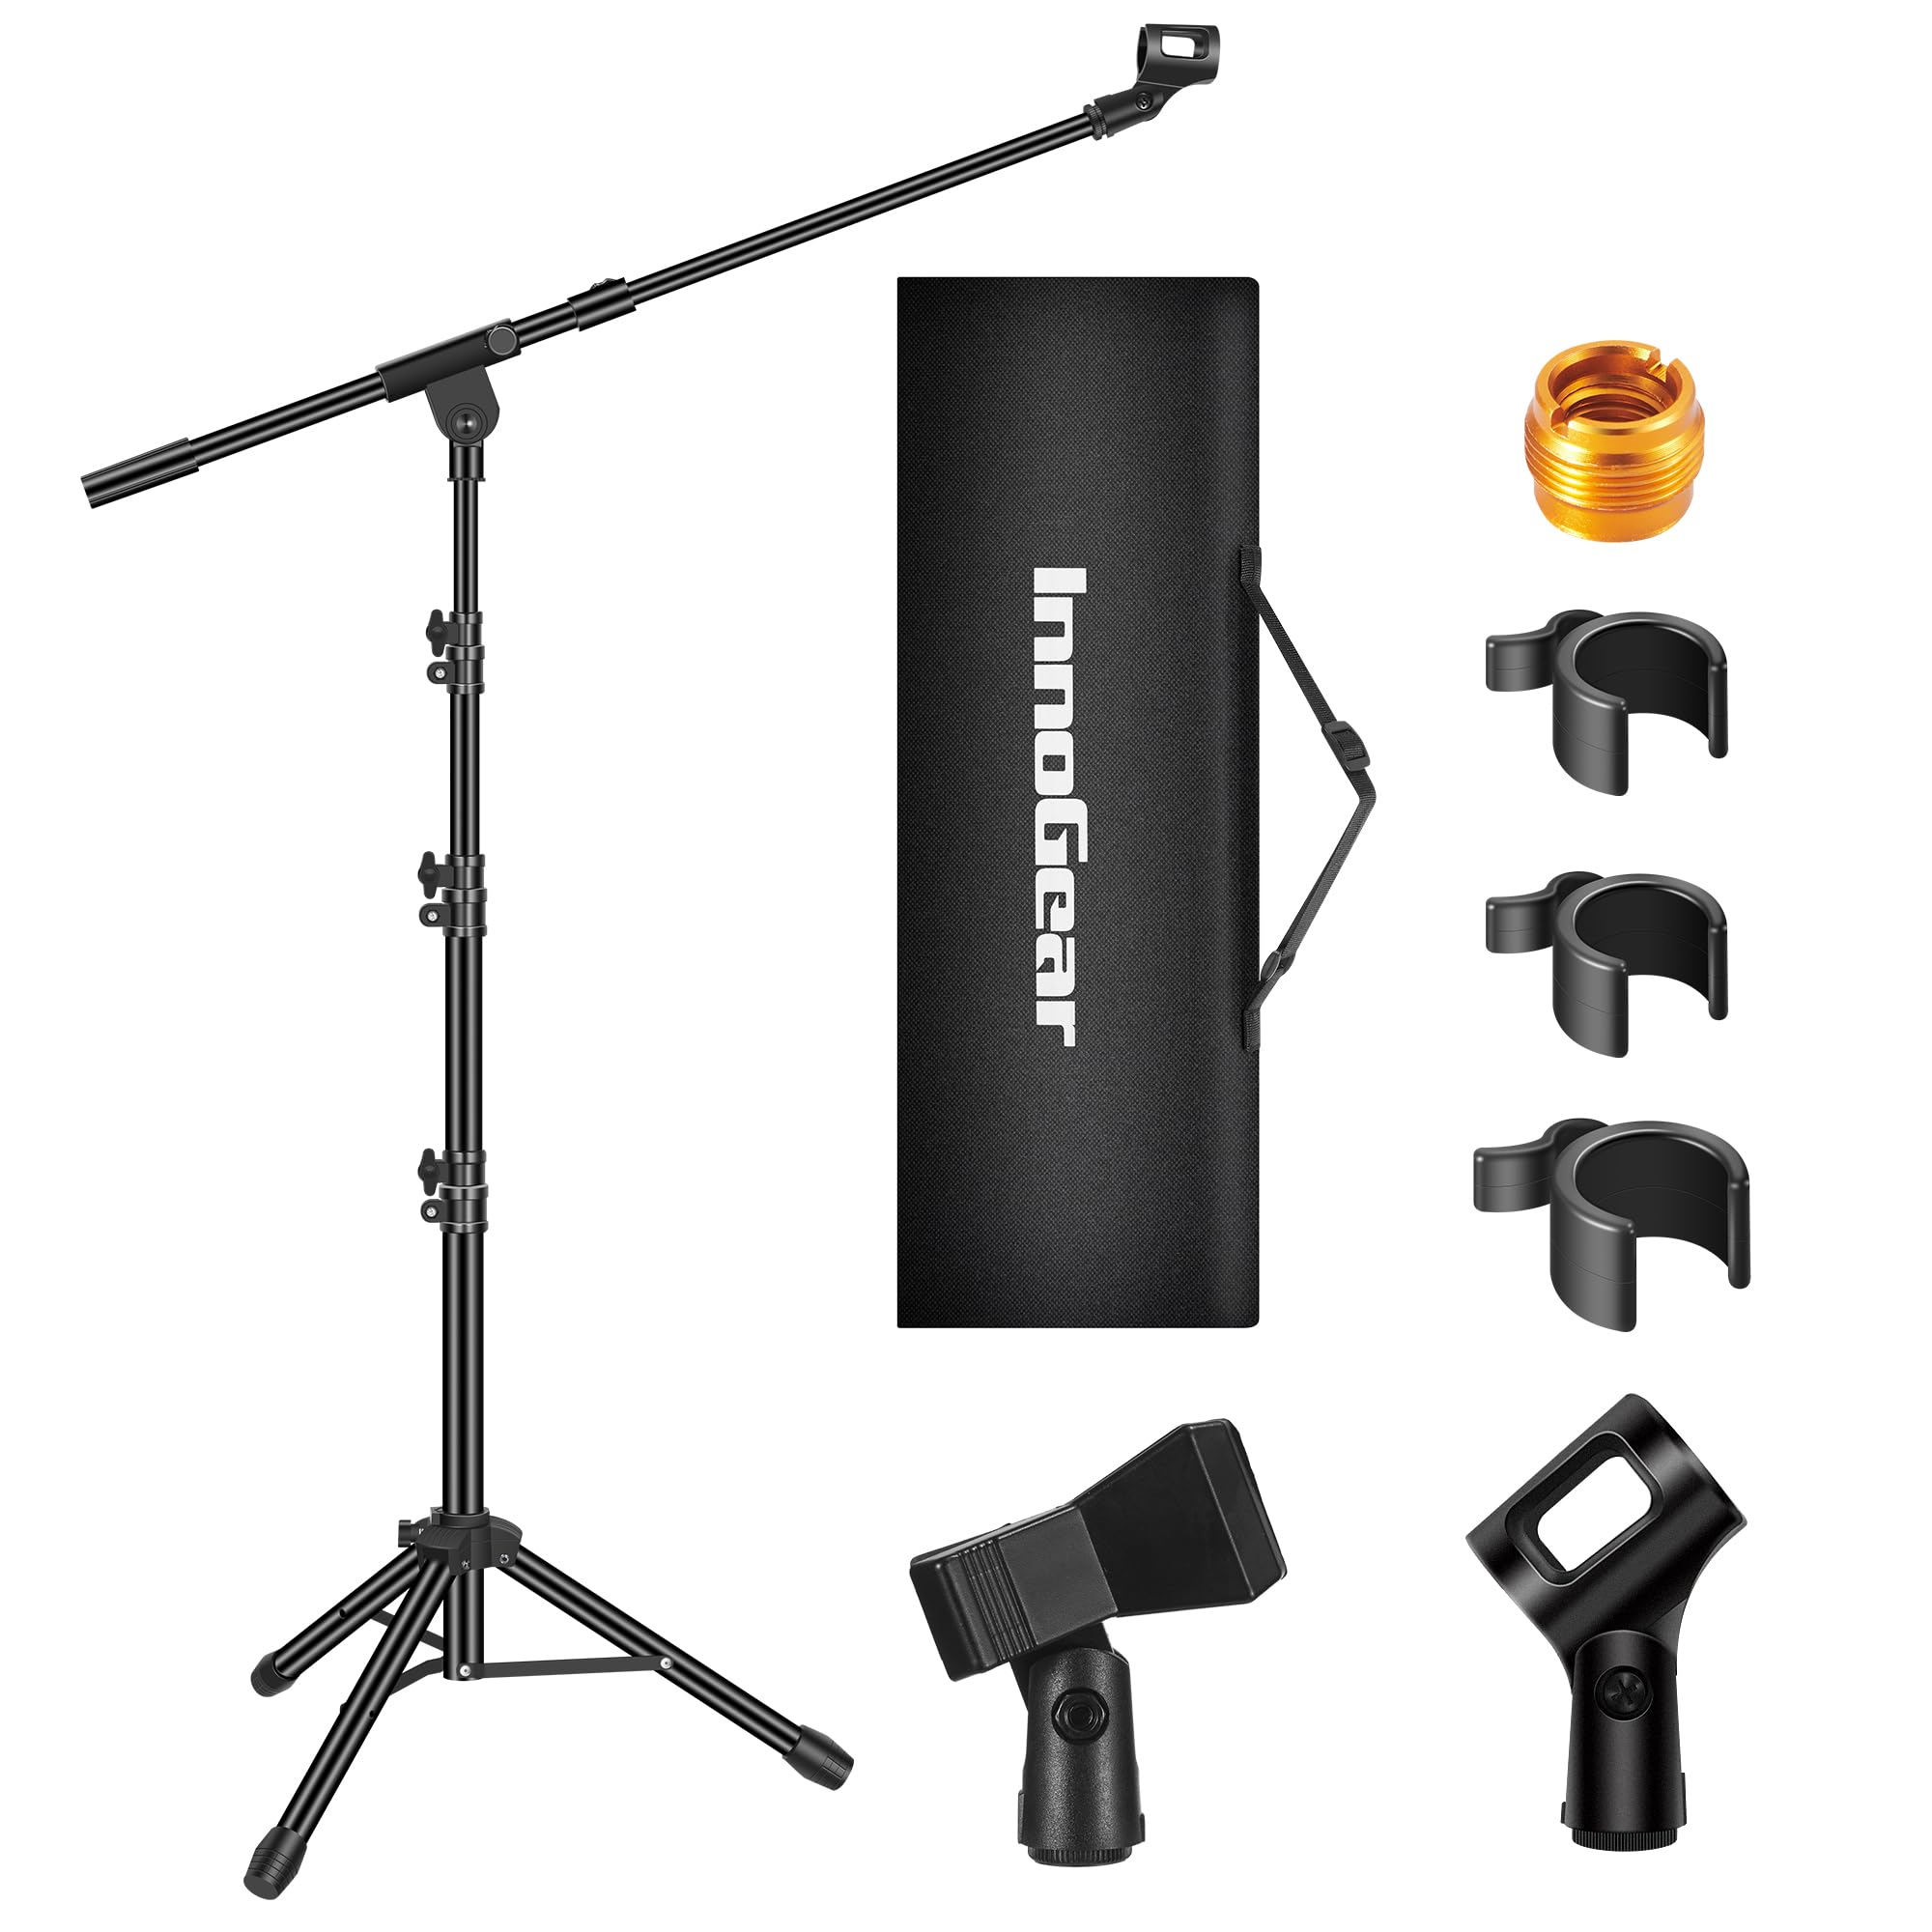 InnoGear Boom Arm Microphone Stand, Max Load 4.4 Lbs Maroc